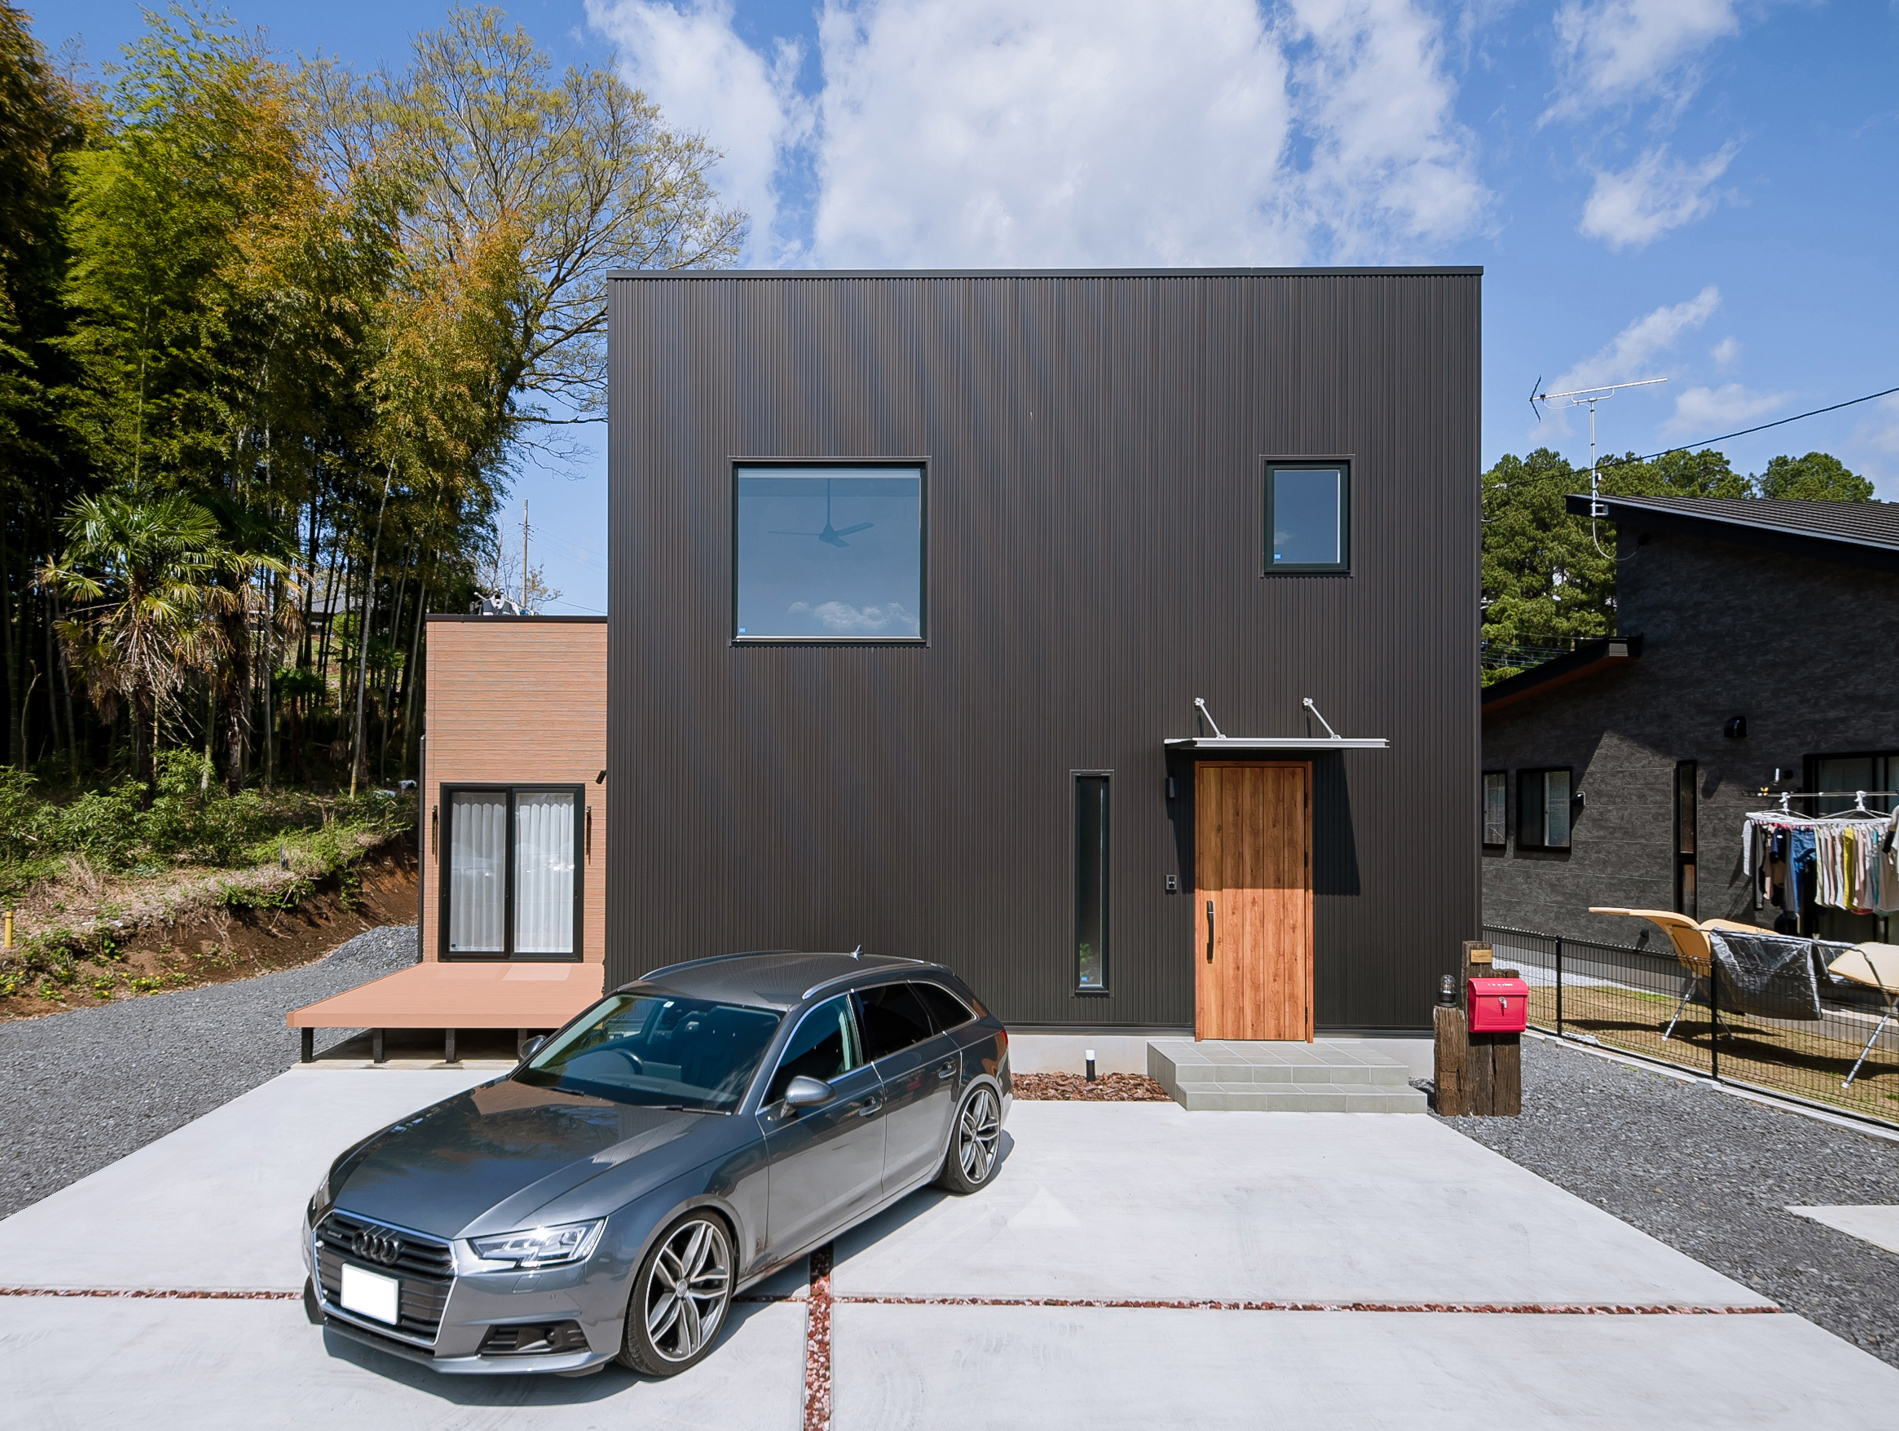 笠間市 | 規格住宅「ZERO-CUBE+BOX」規格住宅の枠にとらわれないカスタマイズプラン 画像